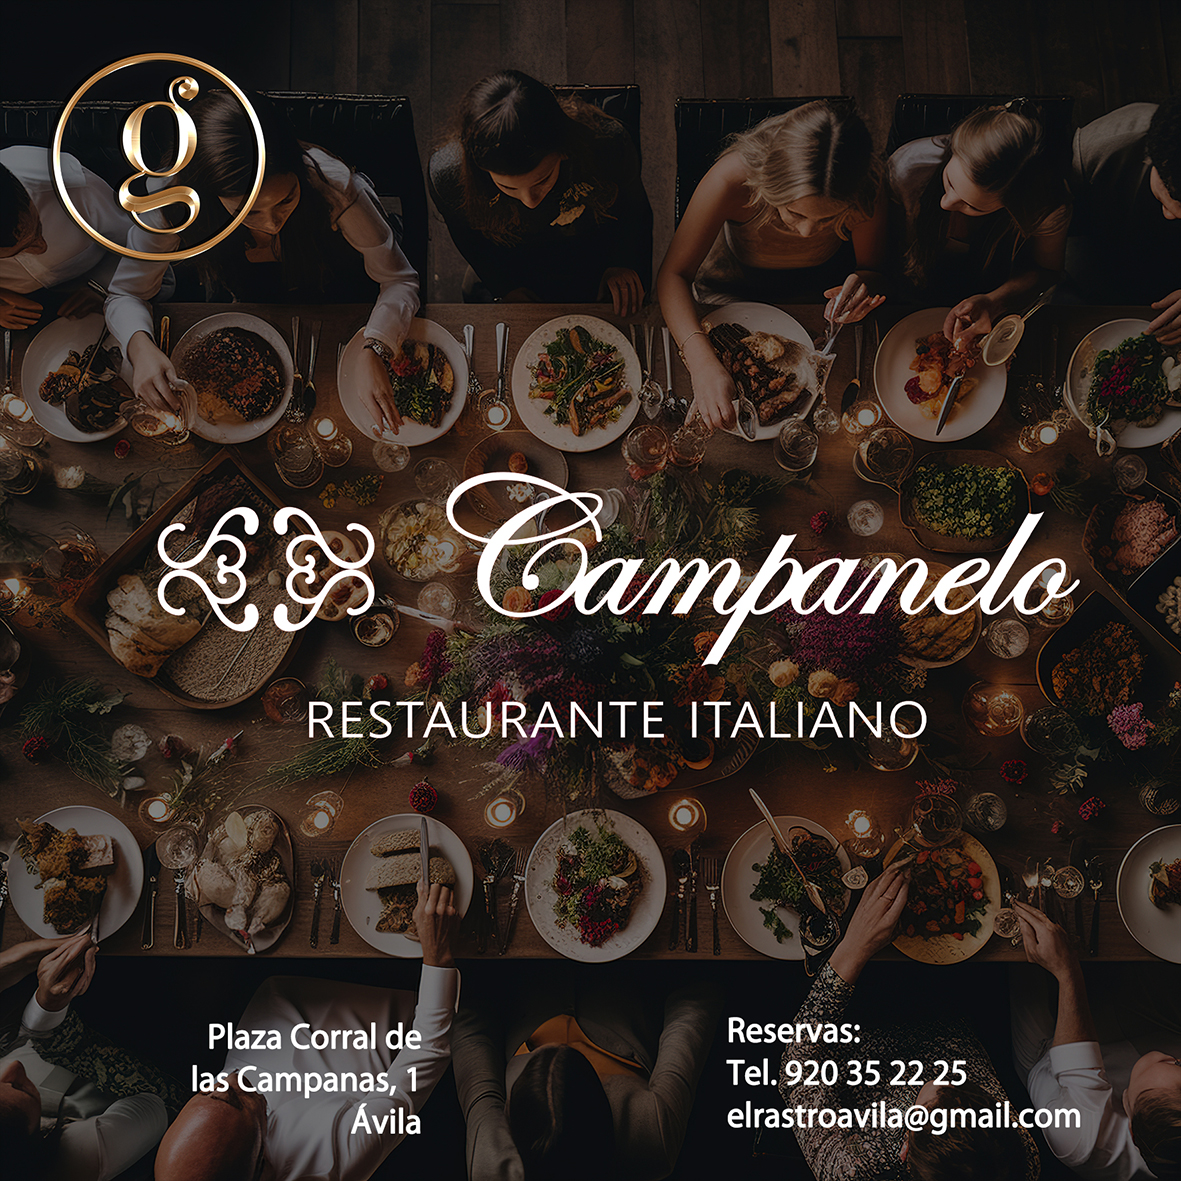 Restaurante Italiano Campanelo